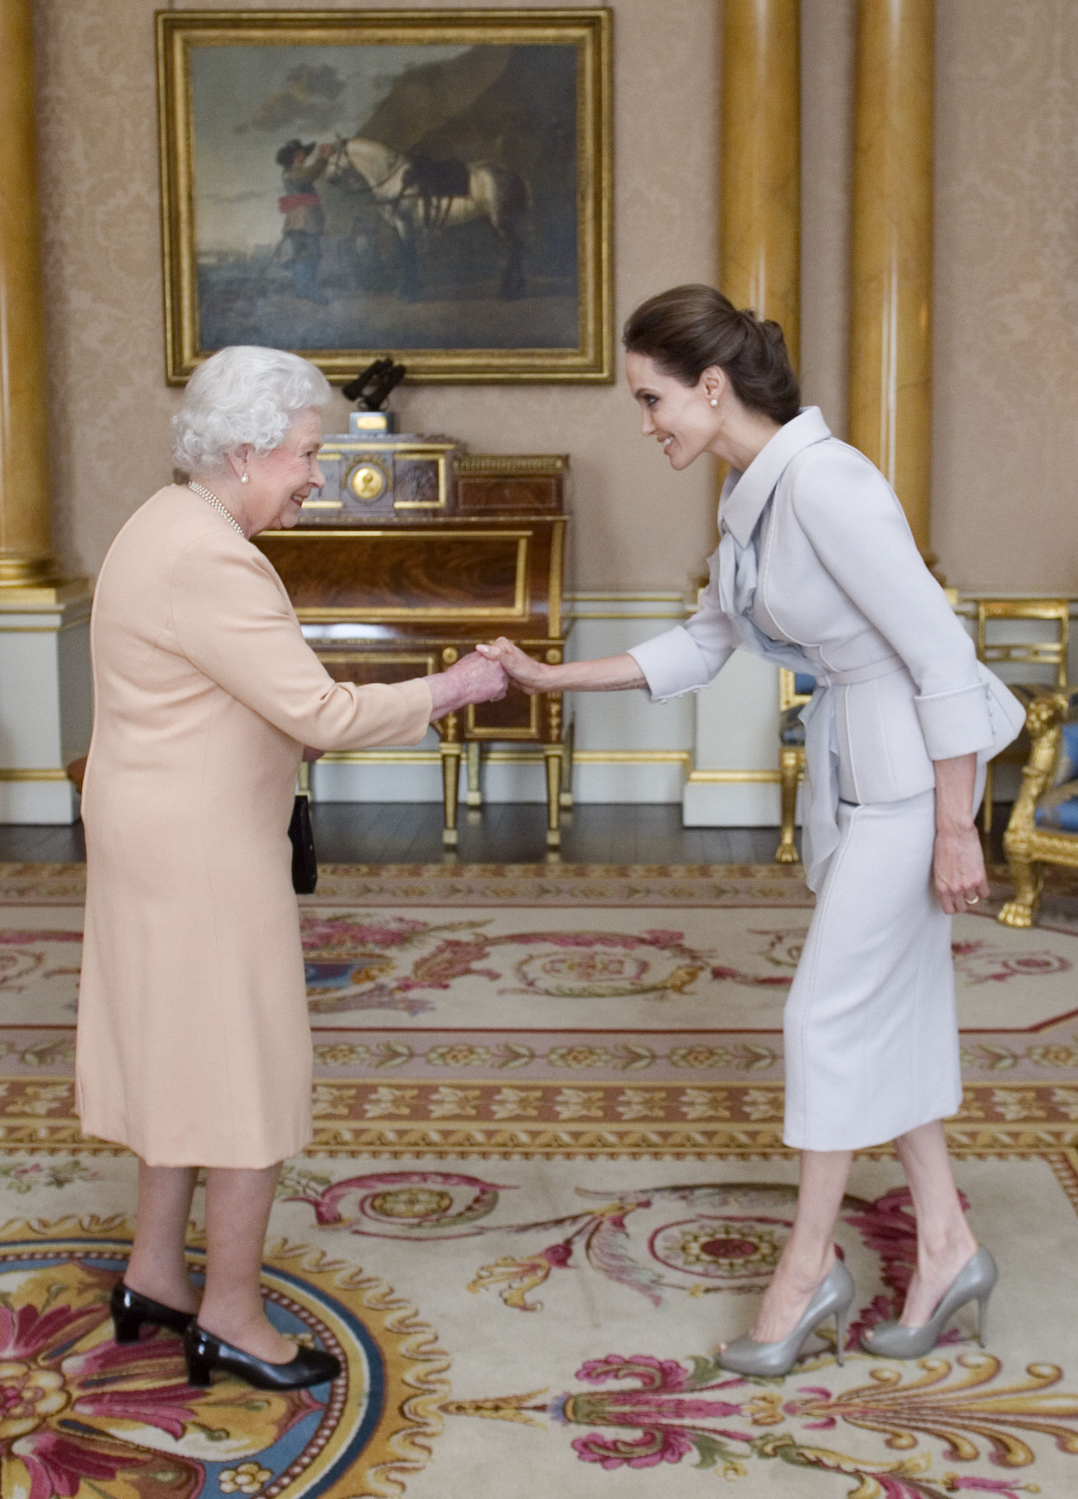 Angelina Jolie od královny v roce 2014 obdržela Řád britského impéria za své zásluhy v boji proti sexuálnímu násilí ve válečných zónách. Šedý kostýmek, který oblékla, se pro podobnou událost perfektně hodí.